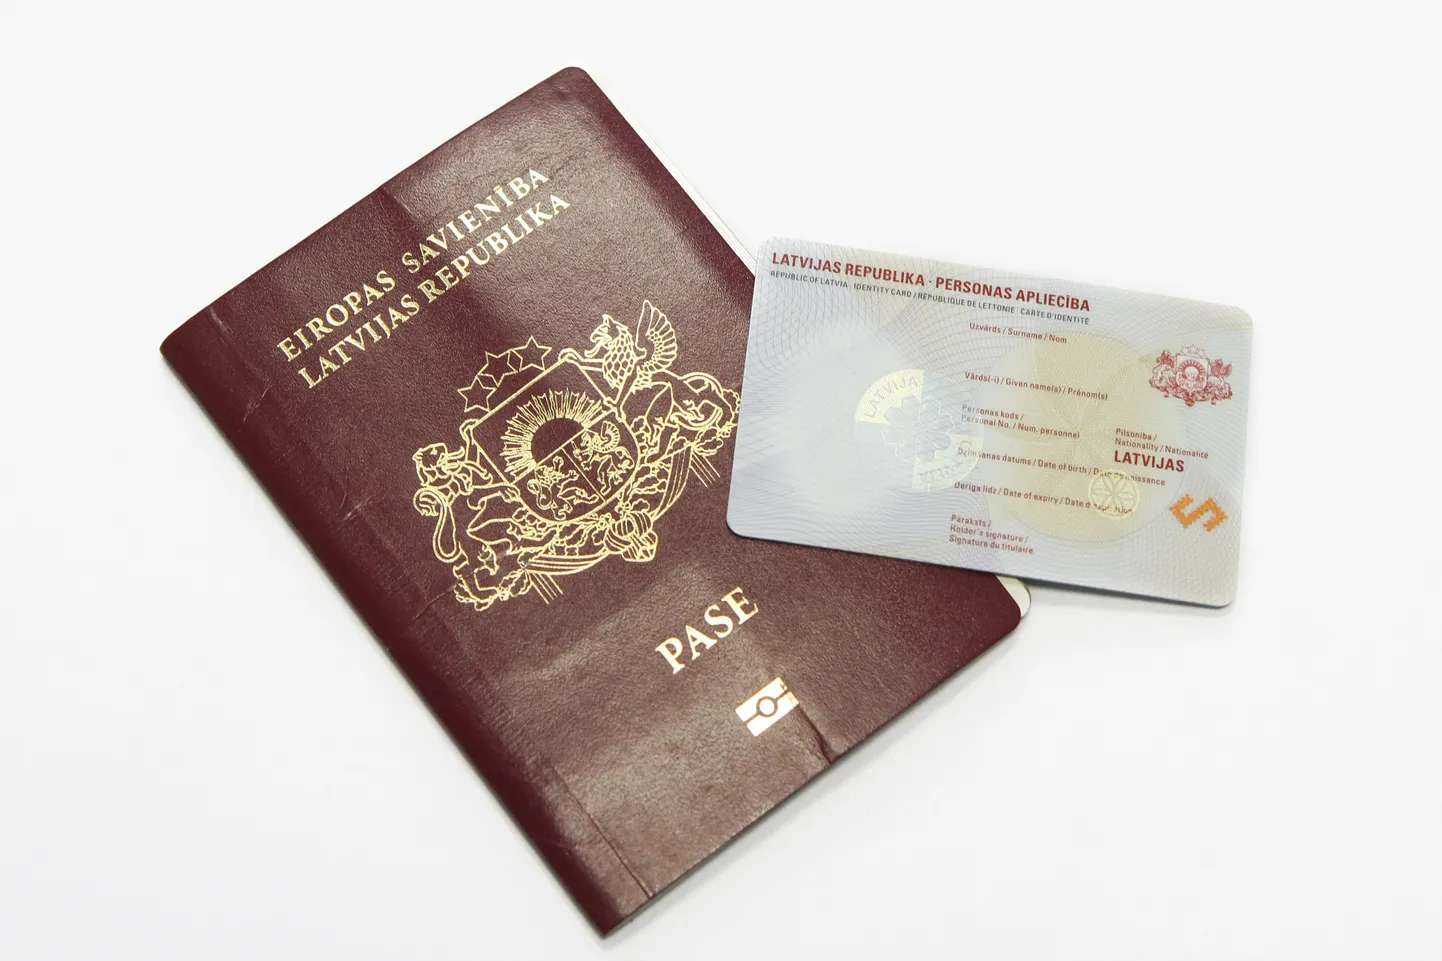 Прототипы паспорта и ID-карты гражданина Латвии